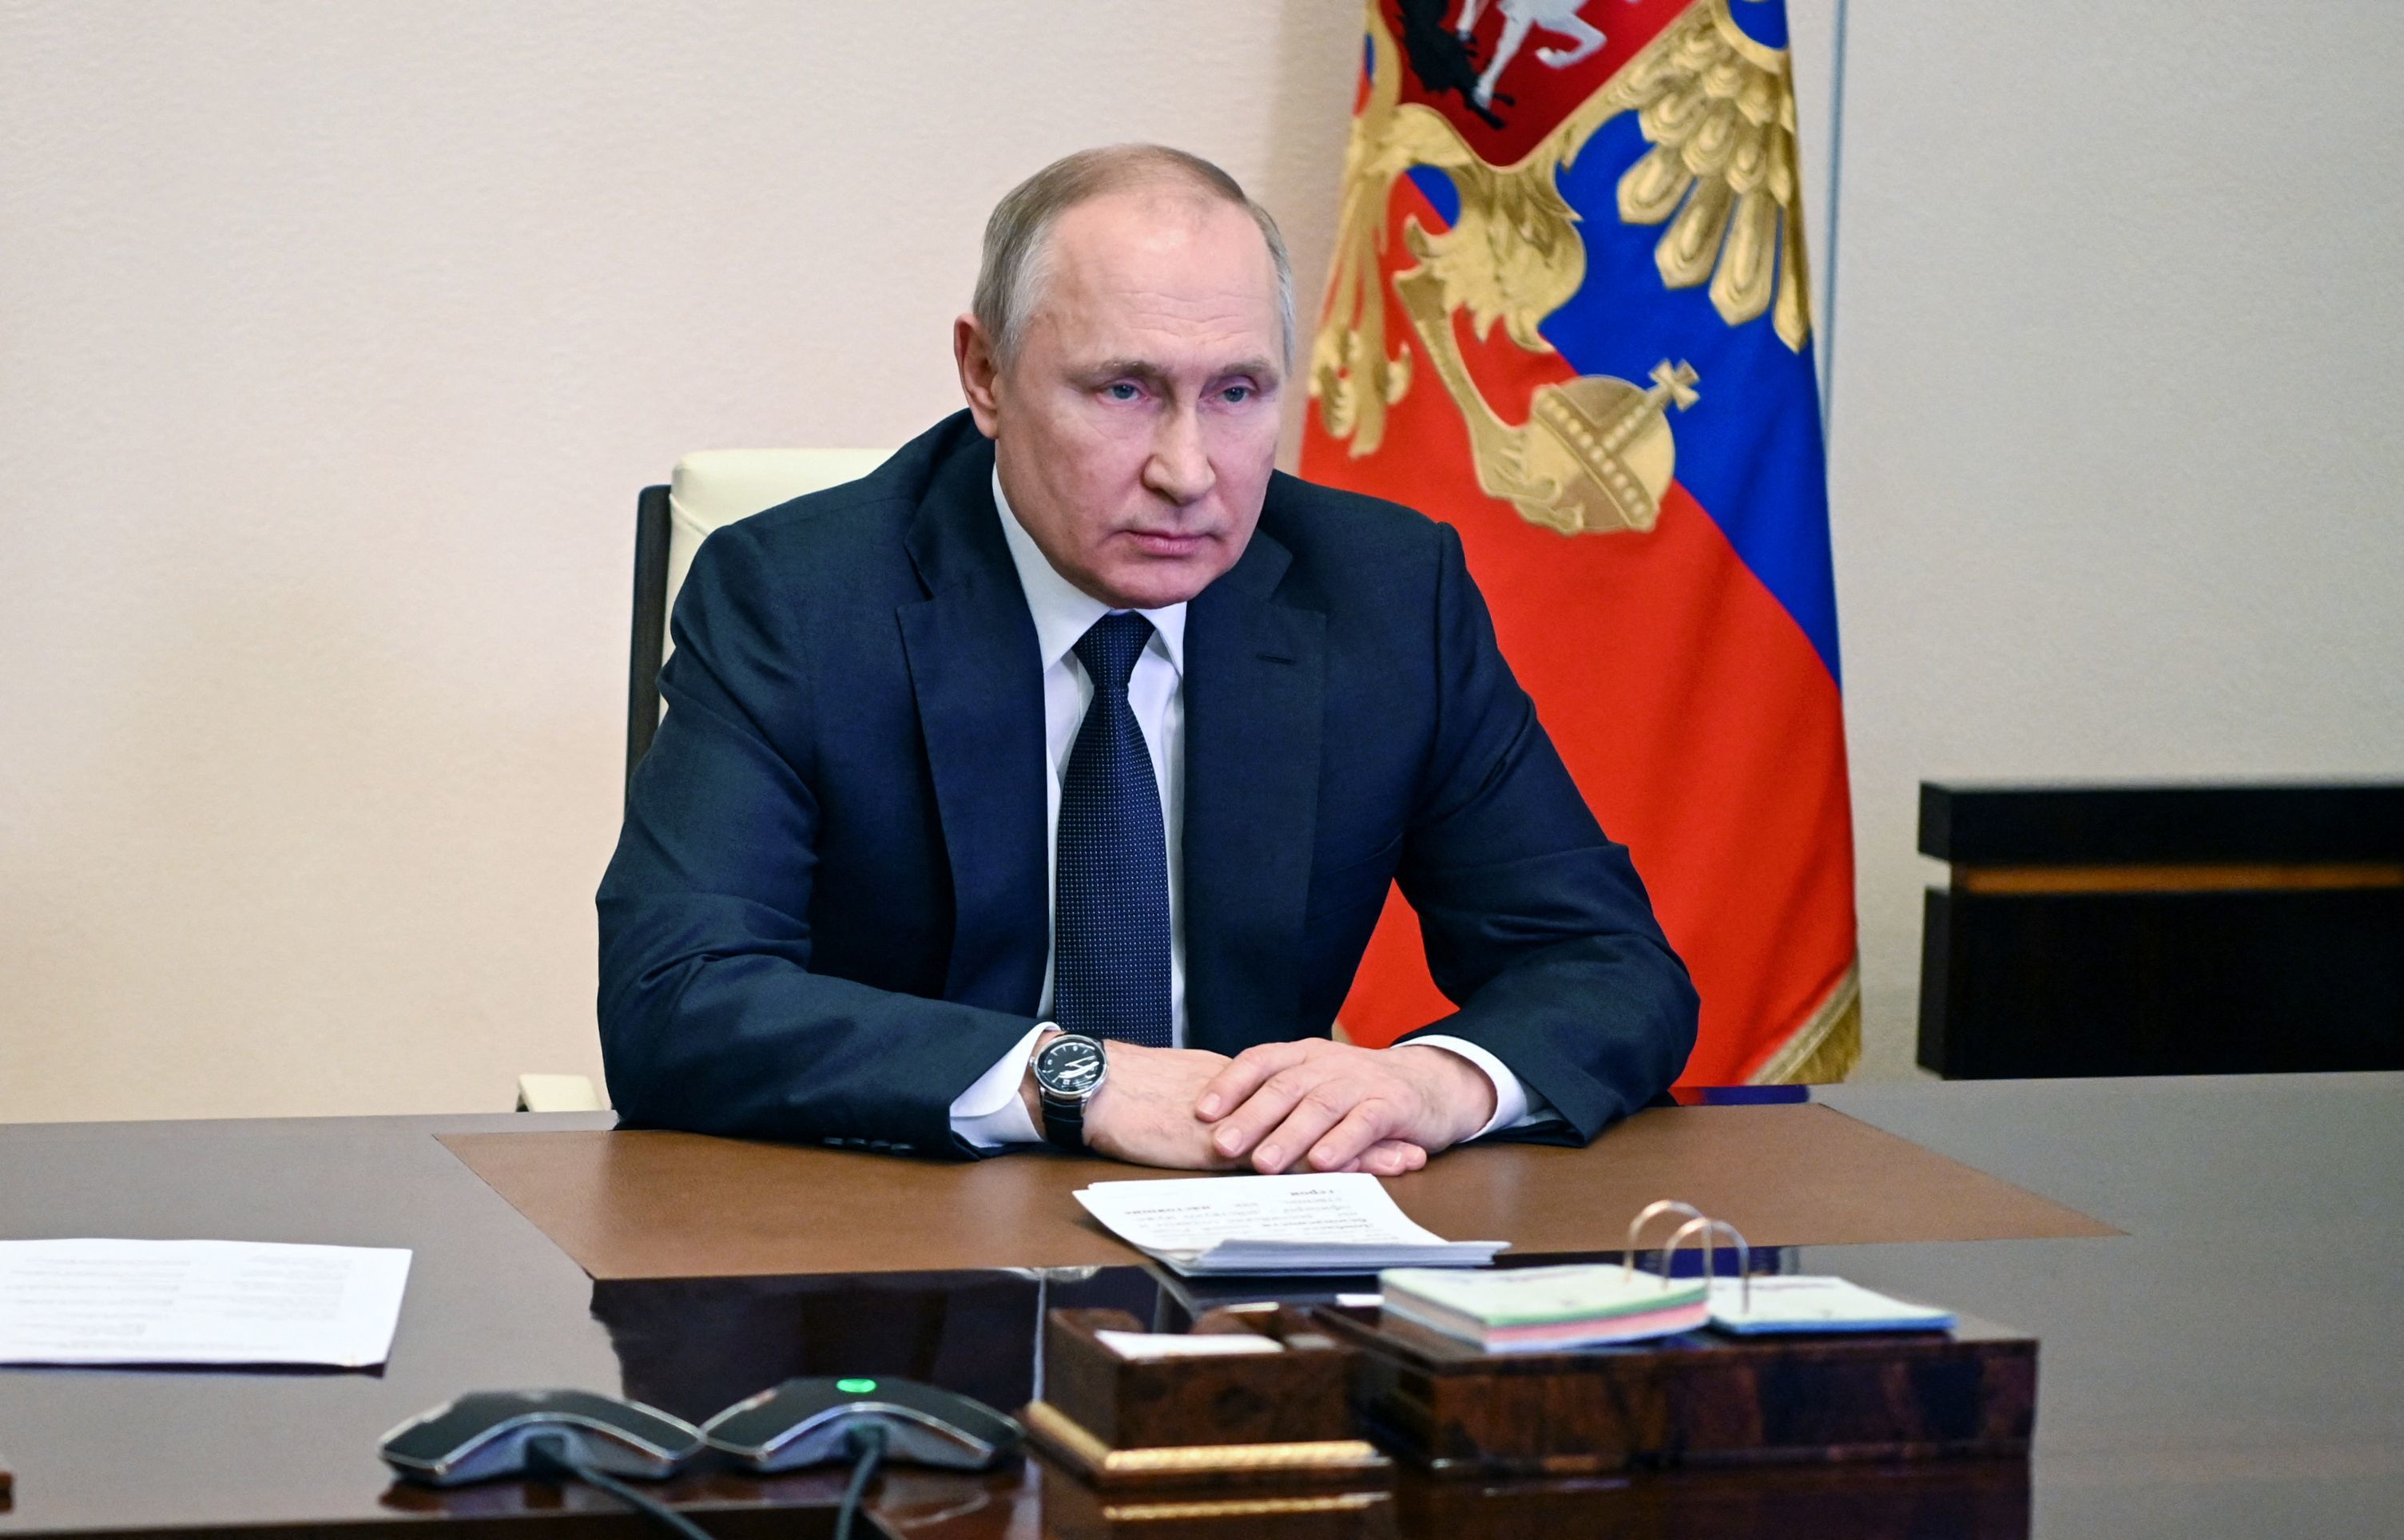 El presidente ruso Vladimir Putin preside una reunin con miembros del Consejo de Seguridad a travs de una teleconferencia en la residencia estatal de Novo-Ogaryovo, en las afueras de Mosc, Rusia, el 3 de marzo de 2022.